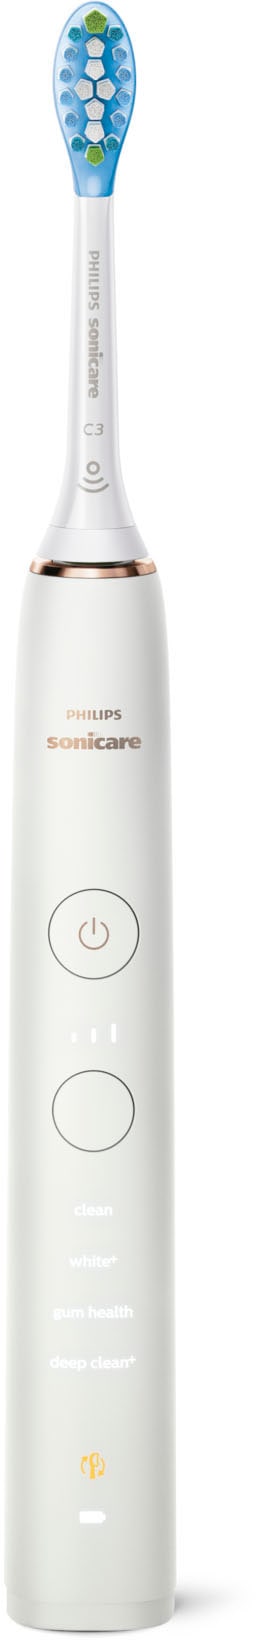 Philips Sonicare Elektrische Zahnbürste »HX9914/55«, 2 St. Aufsteckbürsten, DiamondClean Premium Schallzahnbürste, Doppelpack inkl. Ladeglas